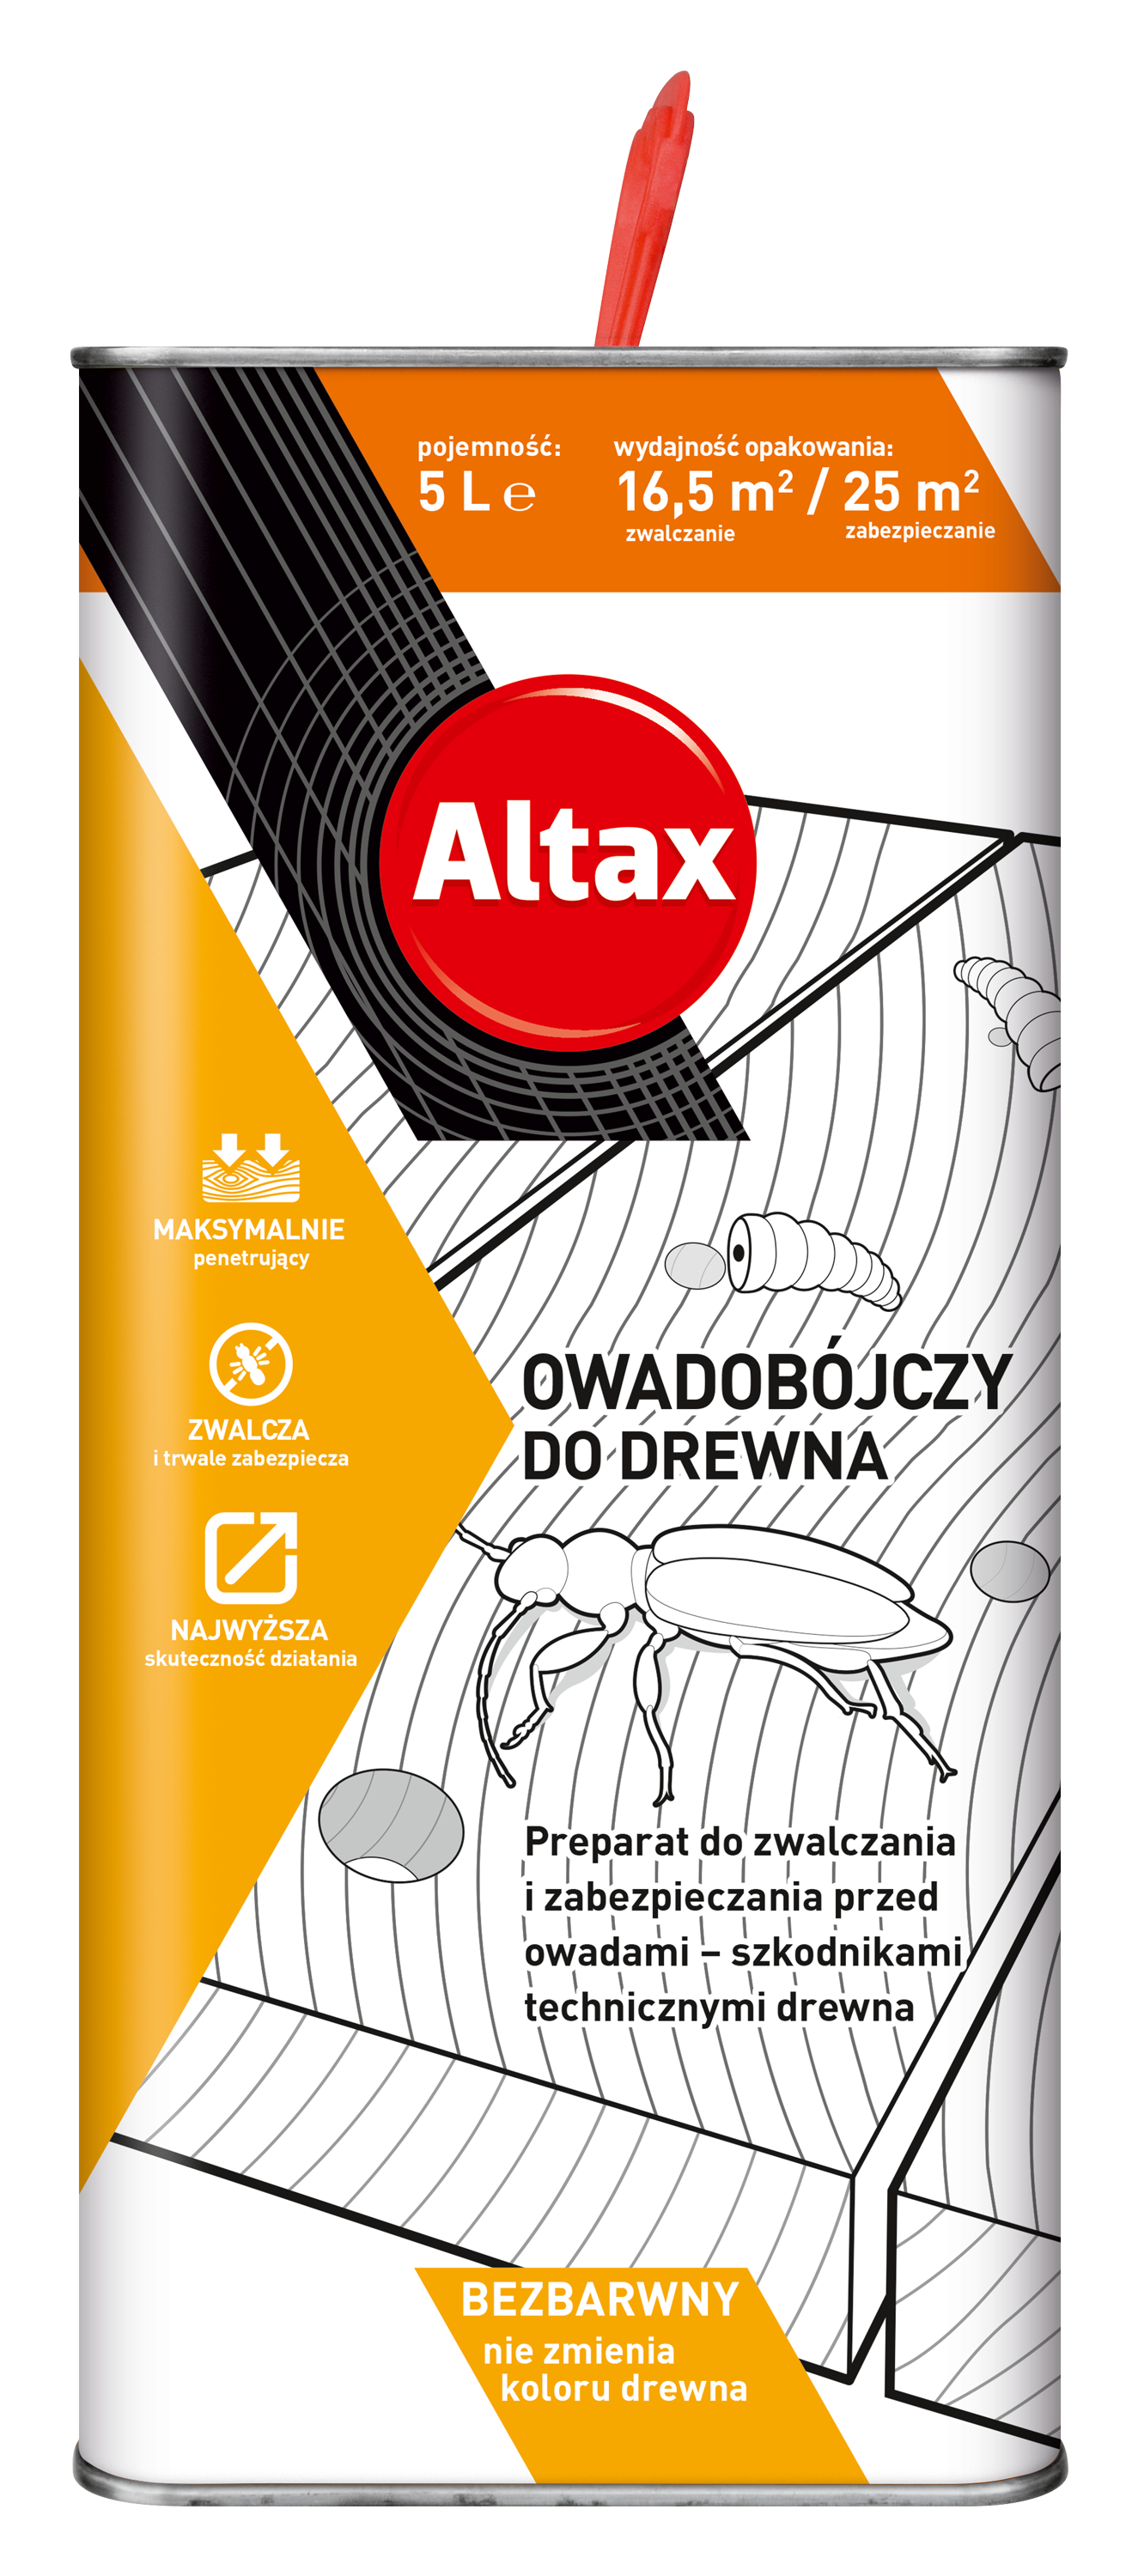 ALTAX-owadobojczy-do-drewna-5L-wiz 9